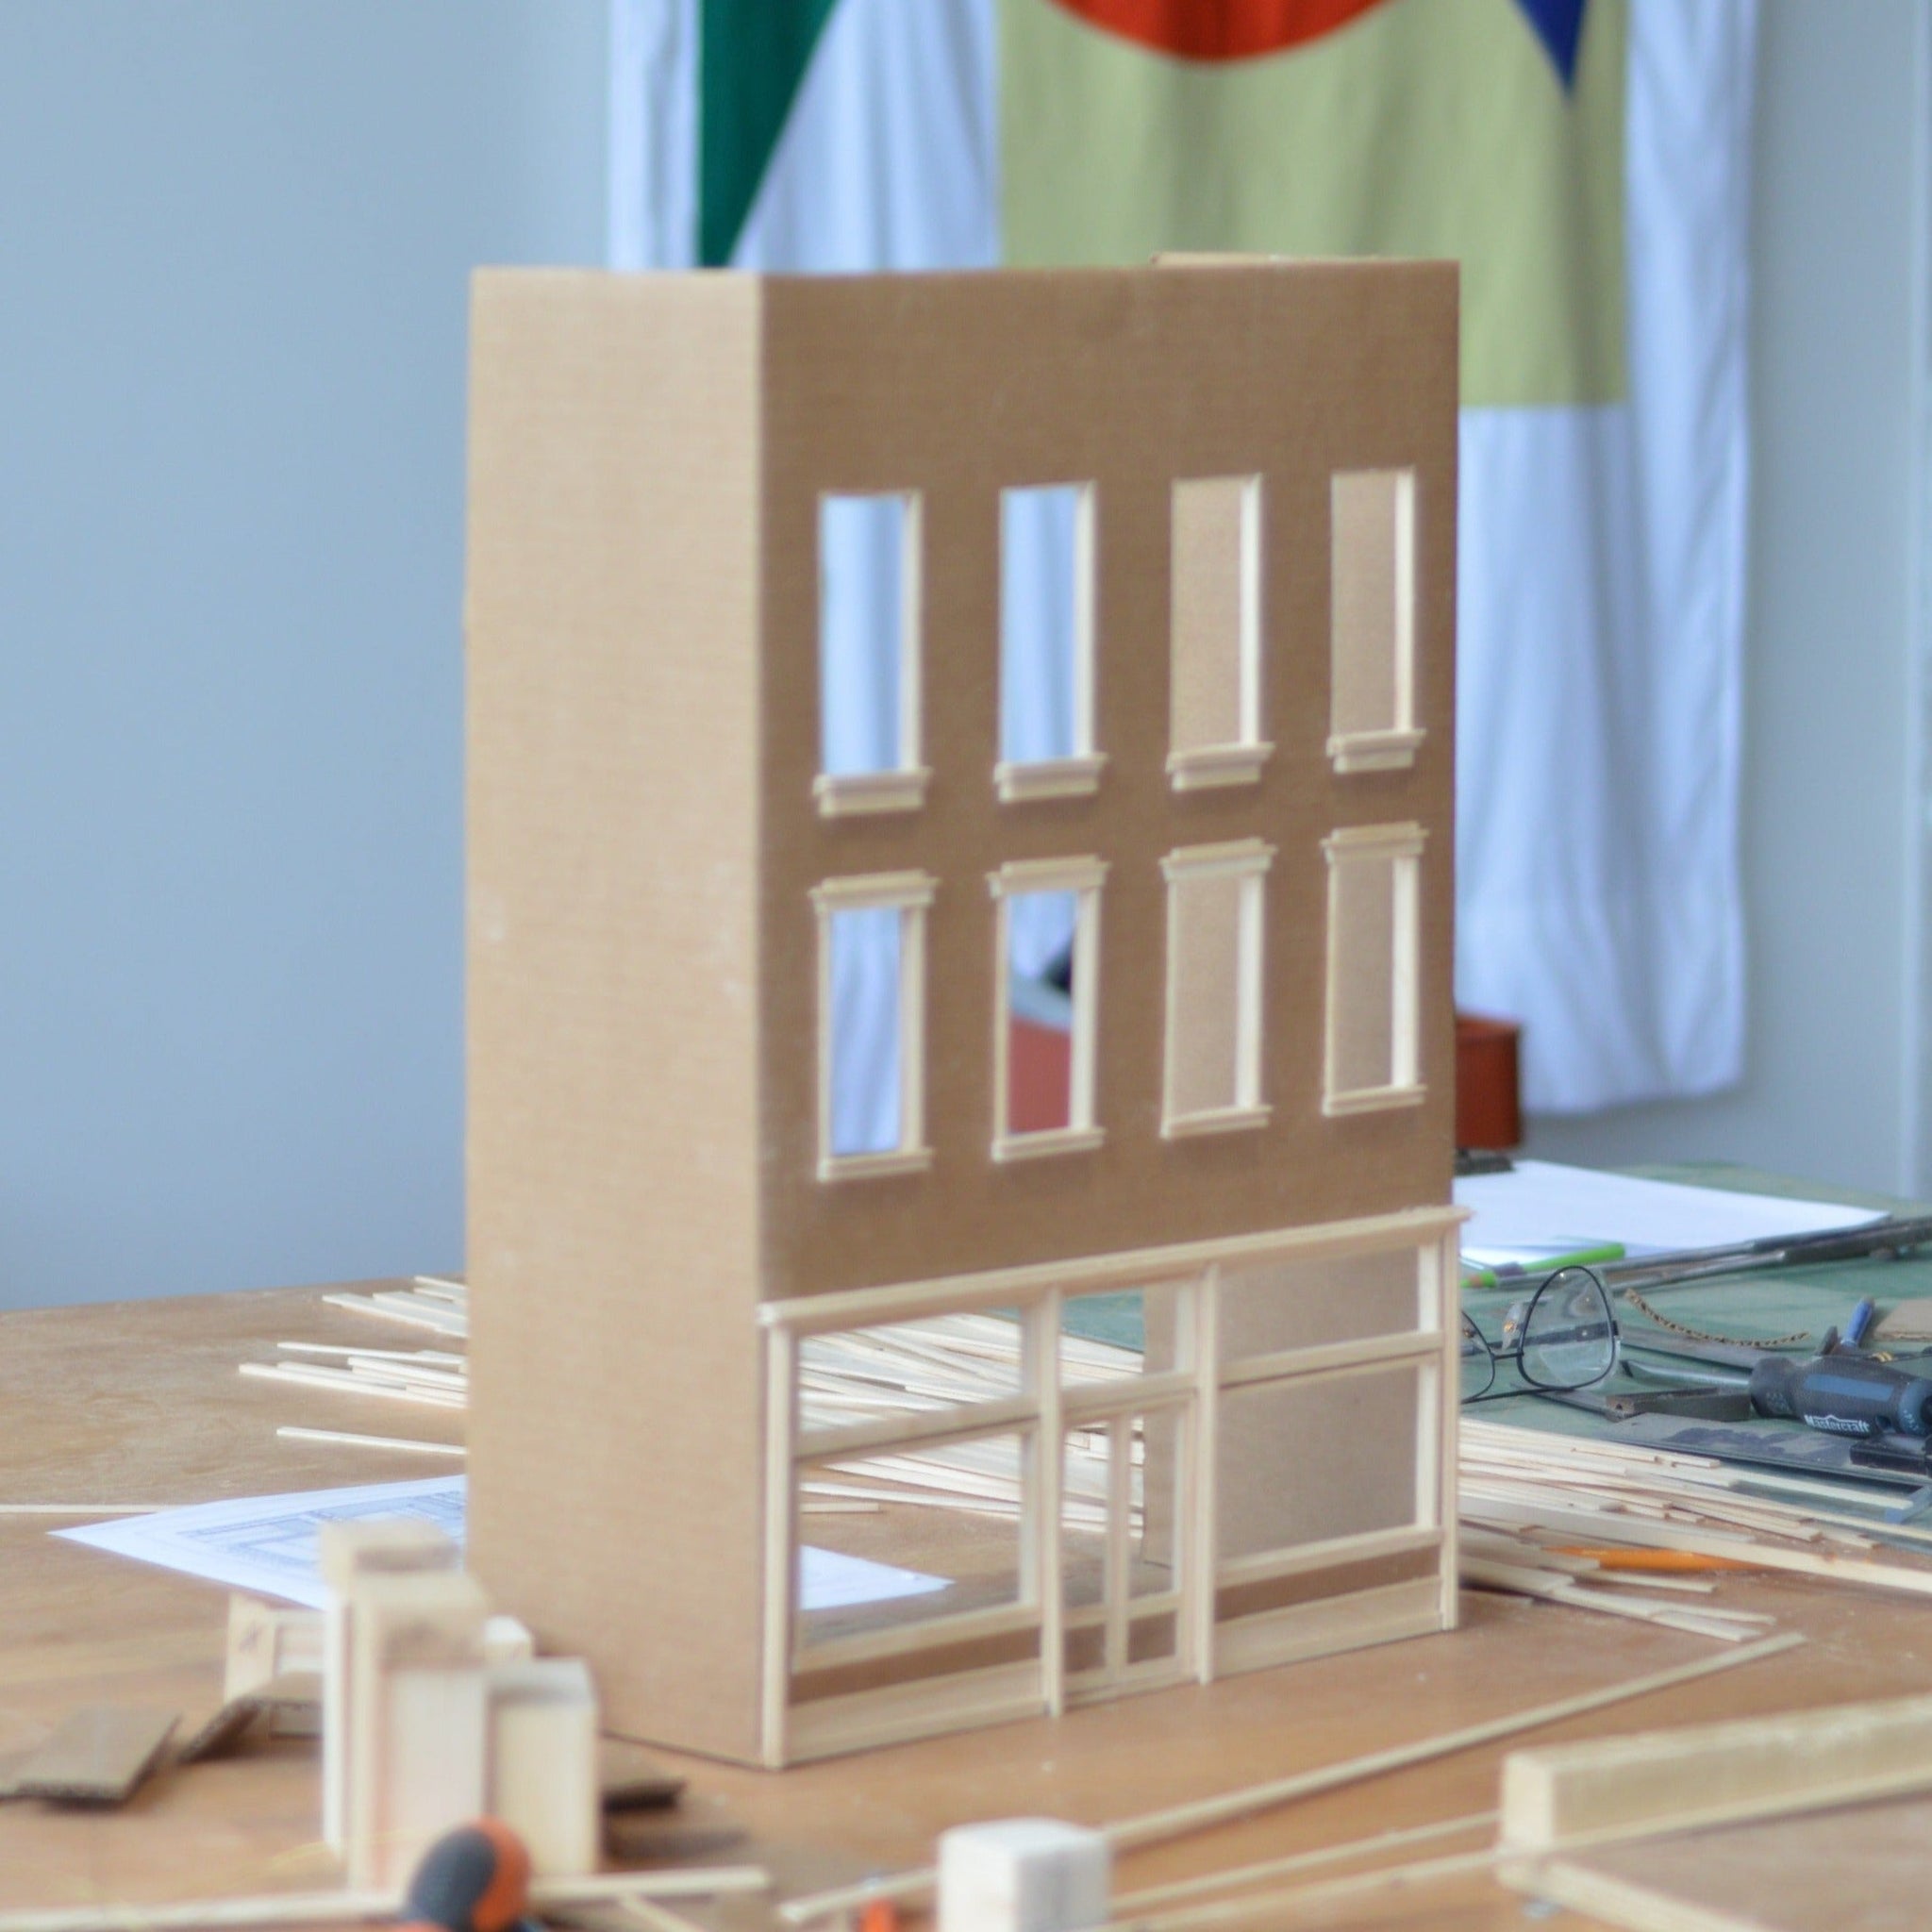 Art, Craft & Design - Miniature House - A Tiny Home